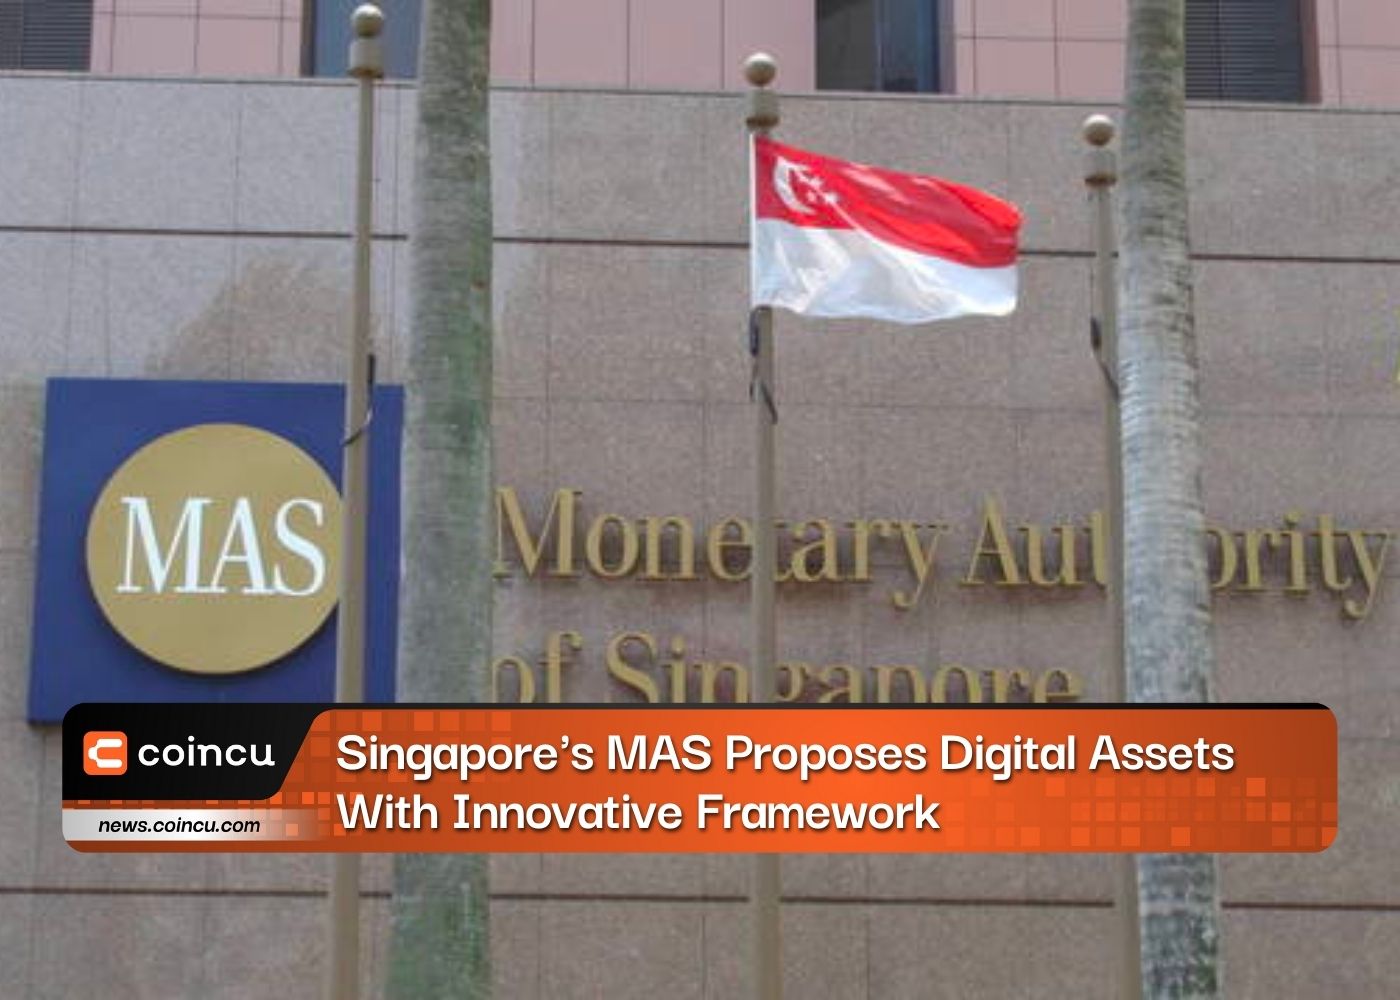 تقترح MAS في سنغافورة أصولًا رقمية بإطار عمل مبتكر